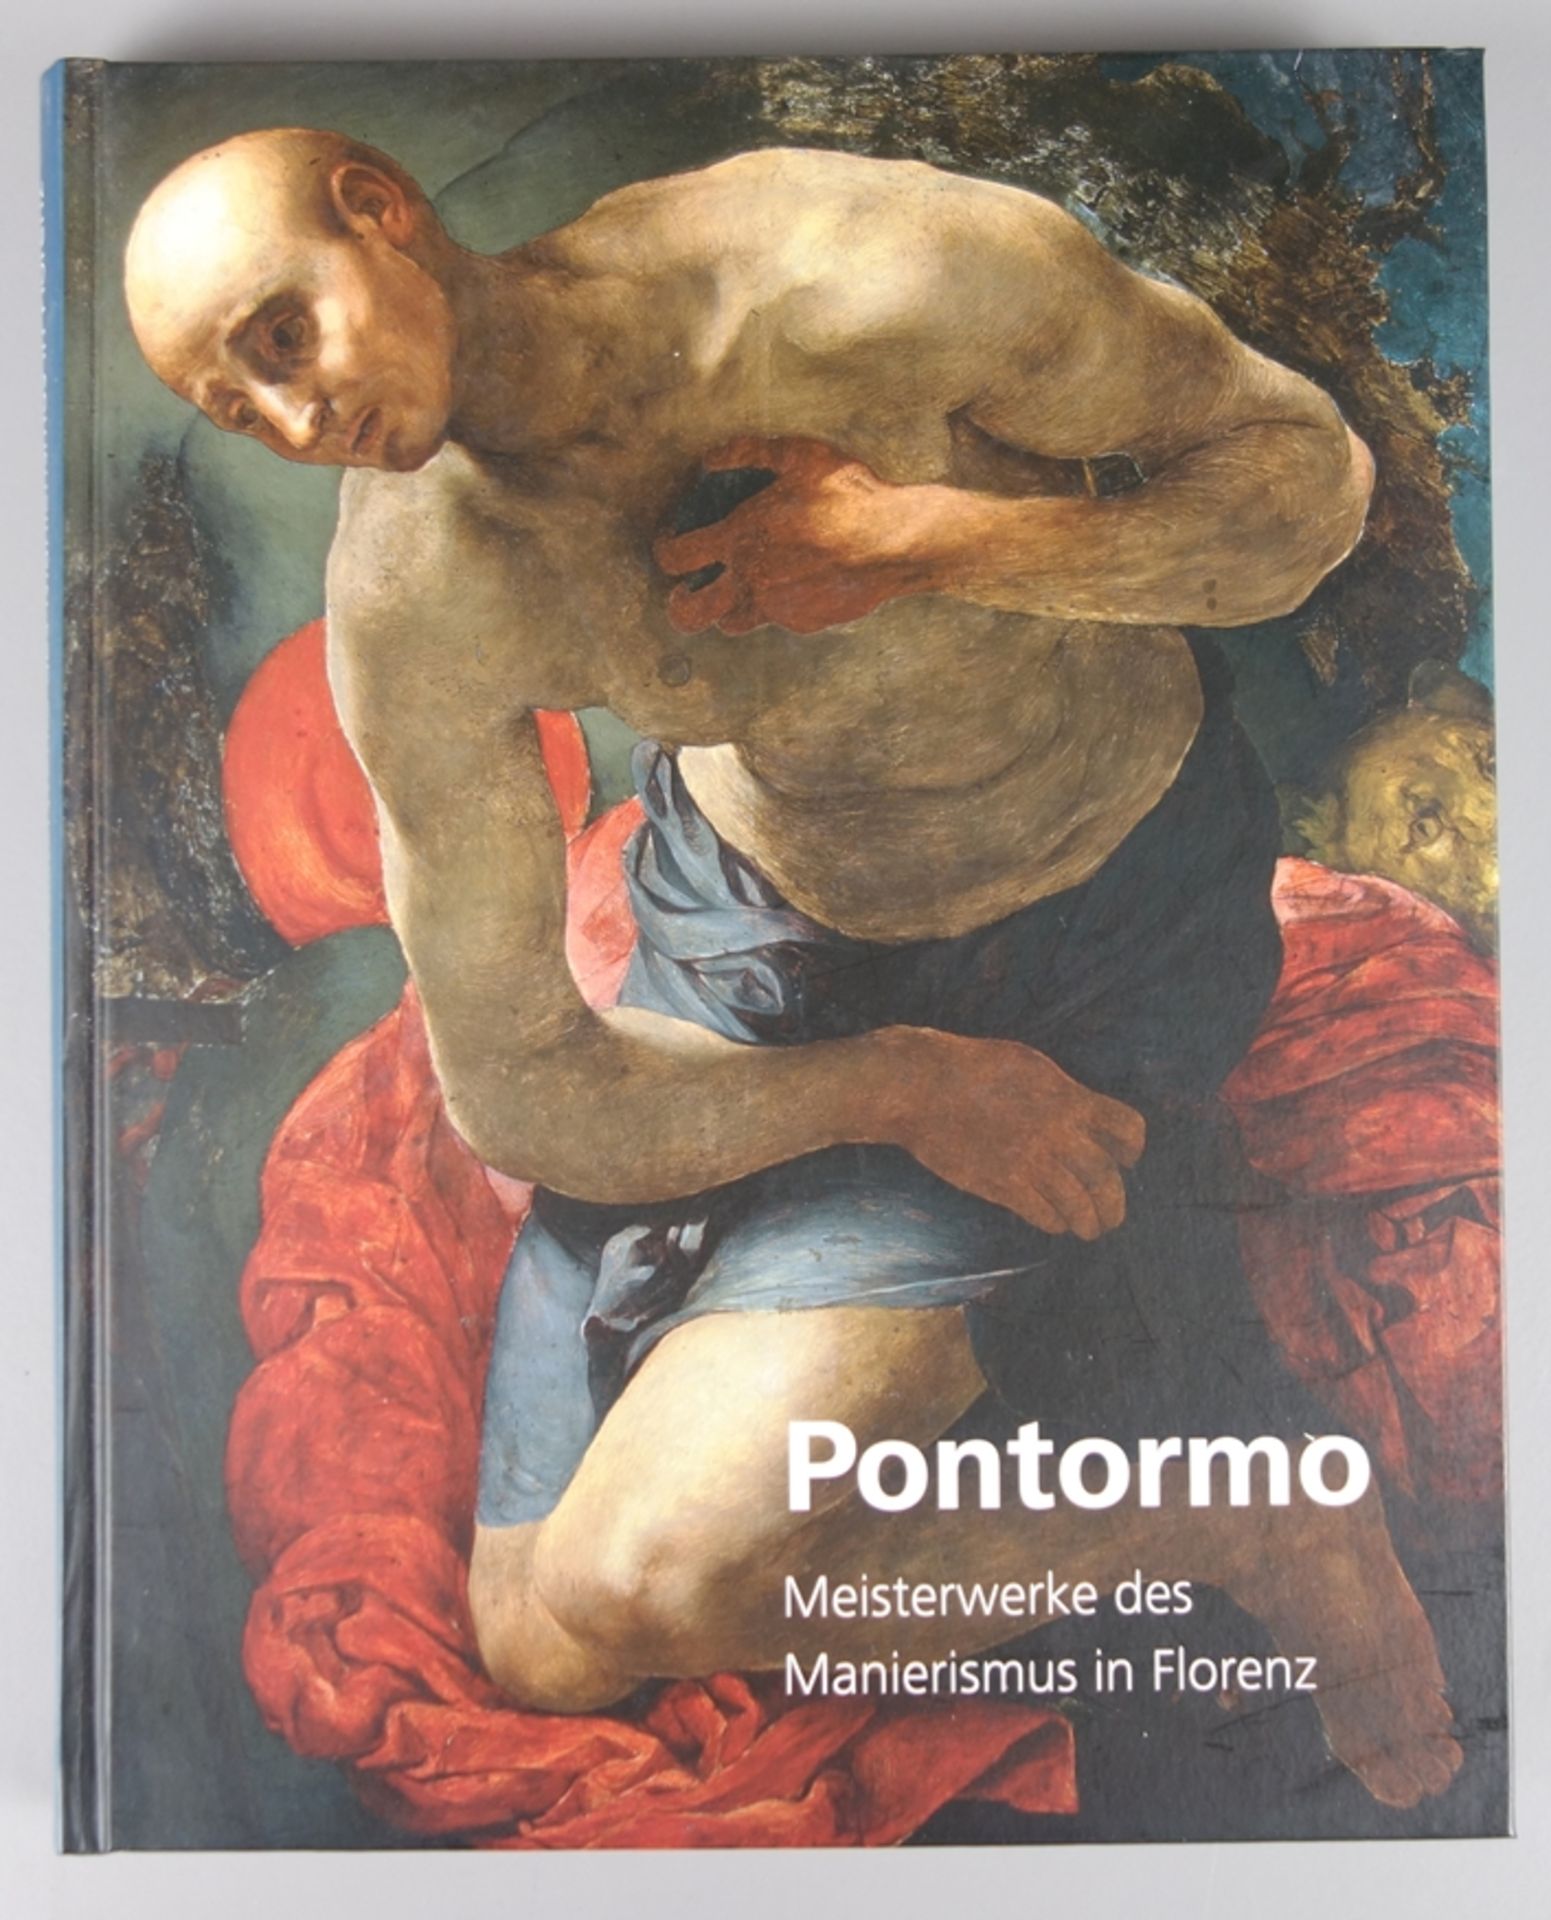 Pontormo - Meisterwerke des Manierismus in Florenz, 2013